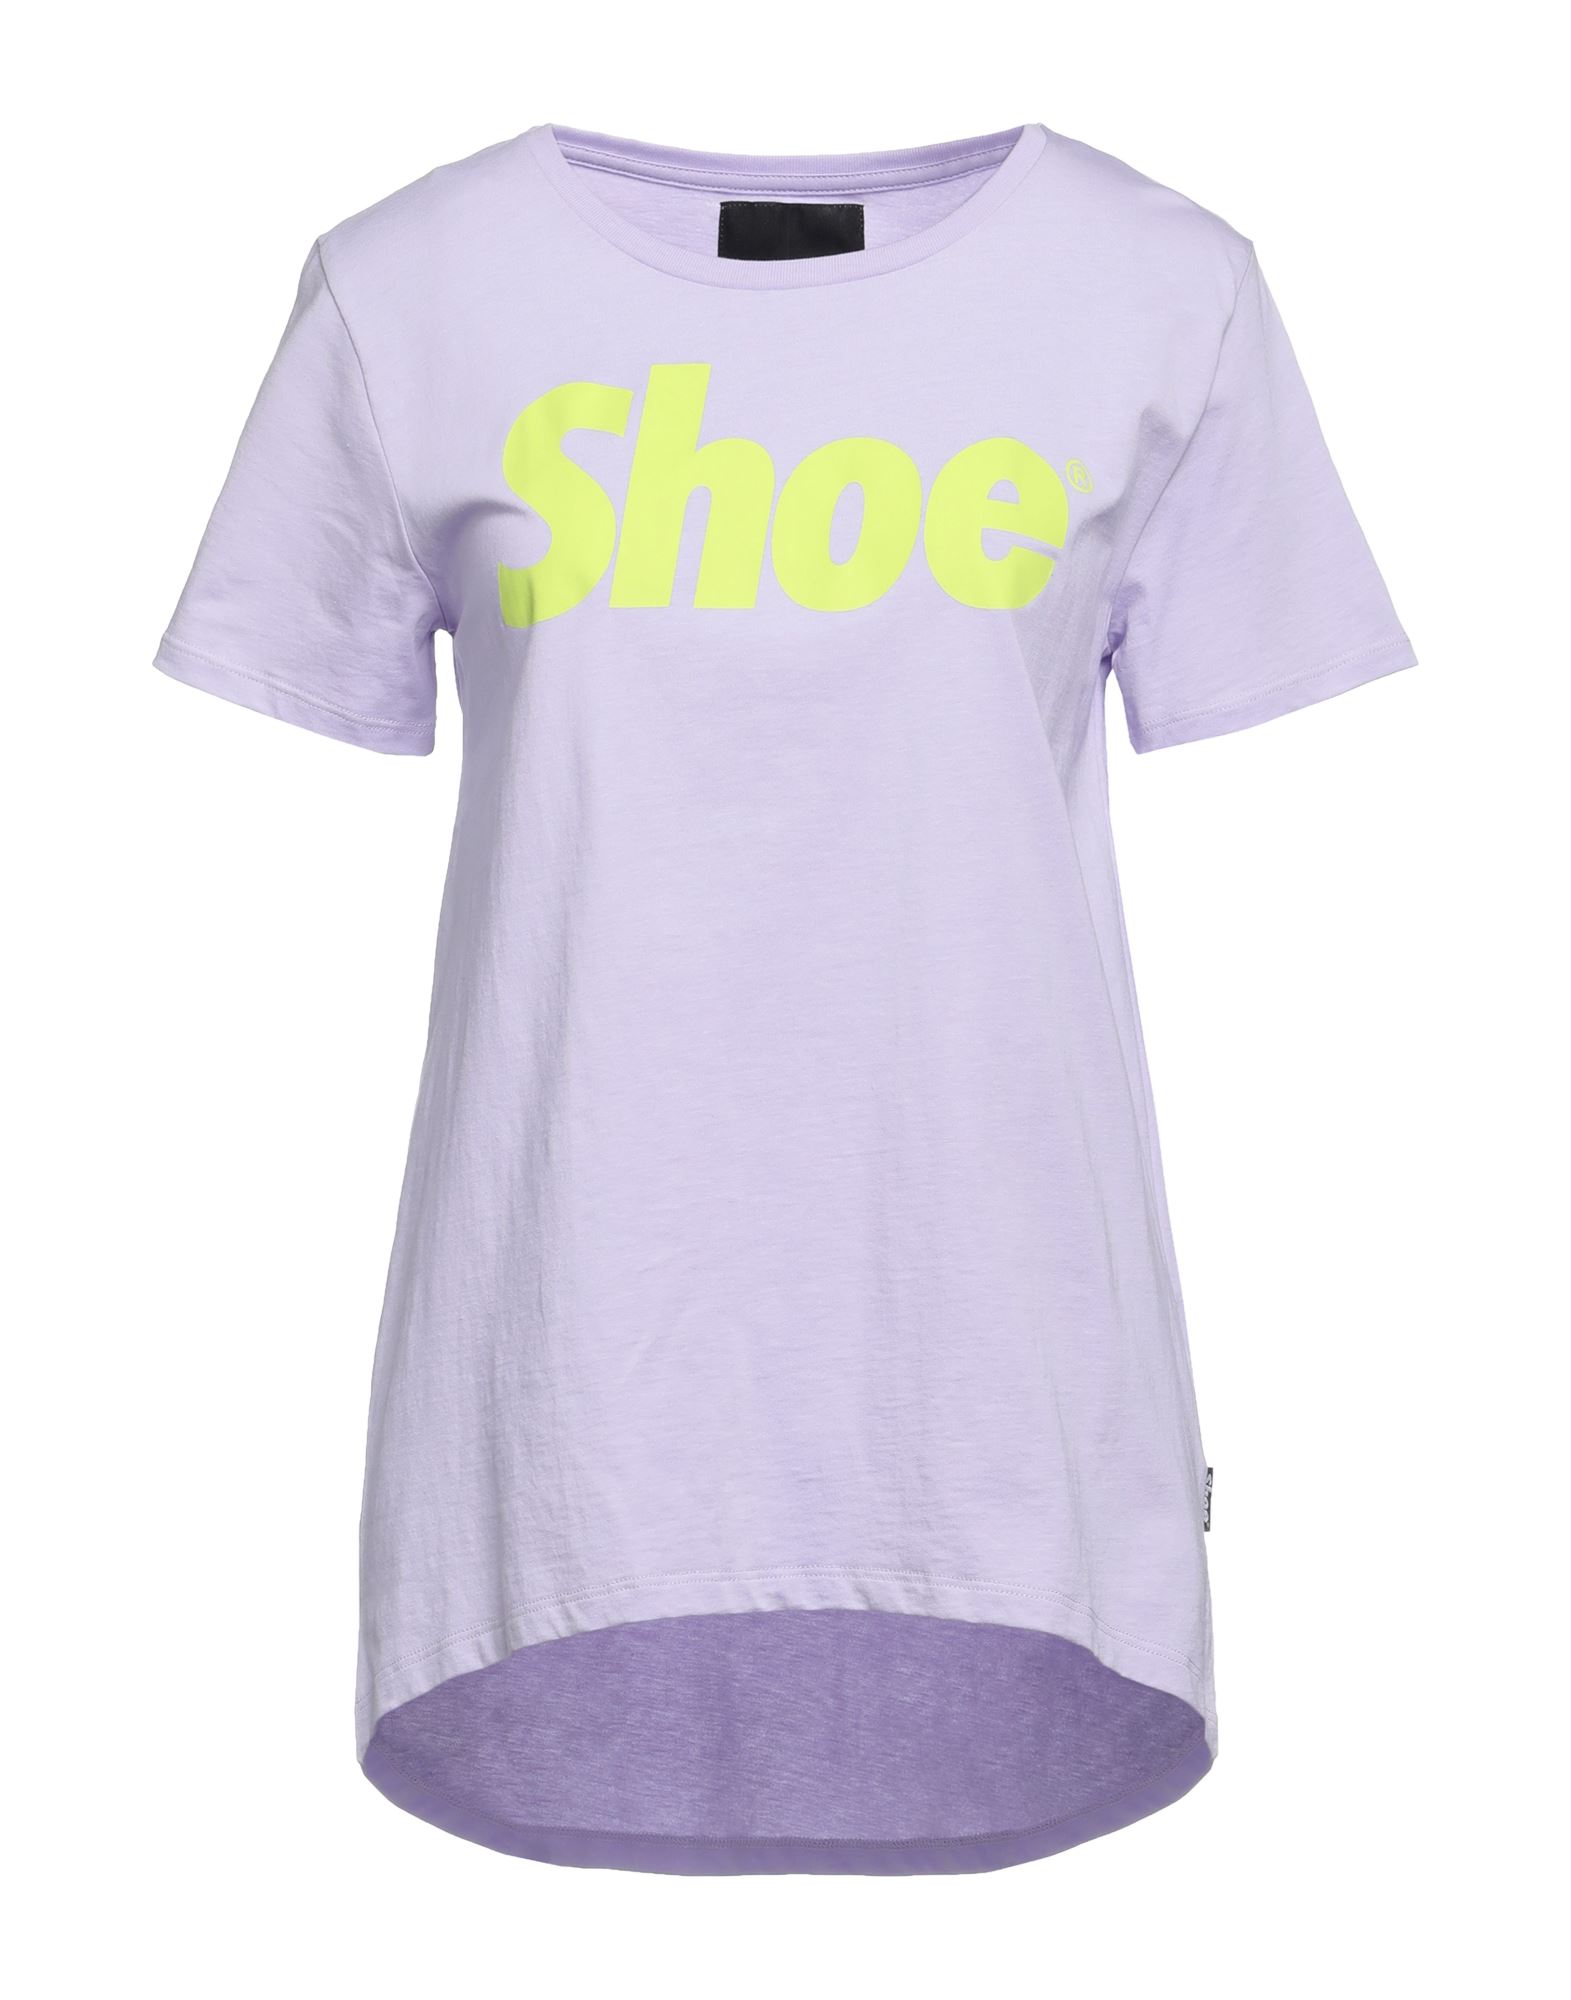 Shoe® Shoe Woman T-shirt Lilac Size Xs Cotton In Purple